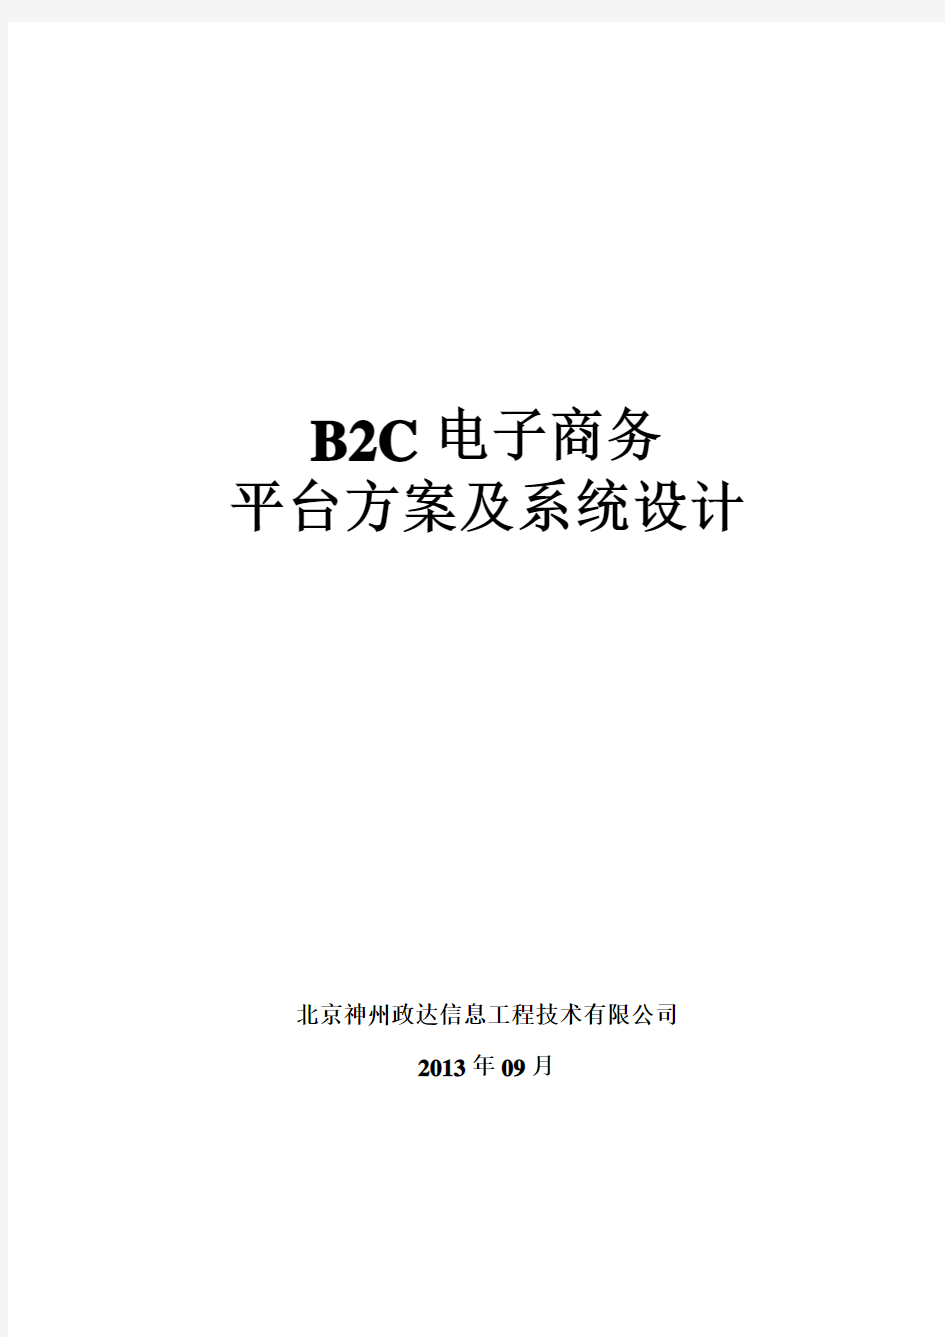 B2C电子商务平台方案及系统设计